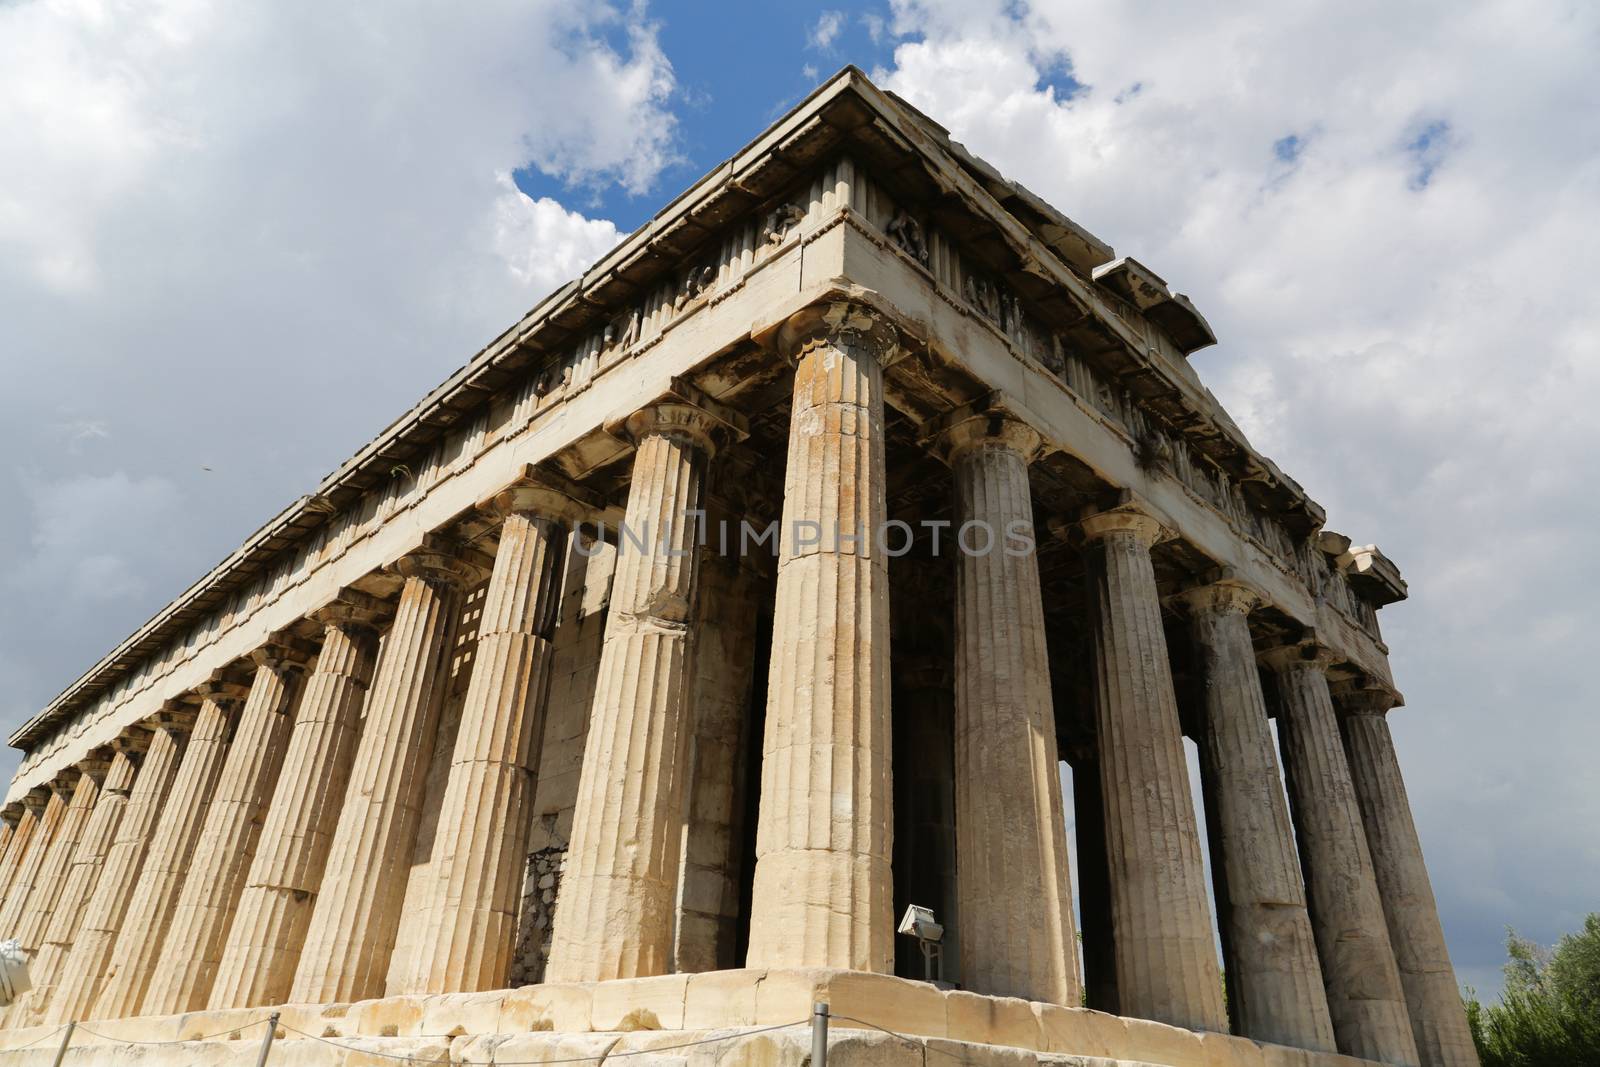 Temple of Hephaestus by Kartouchken